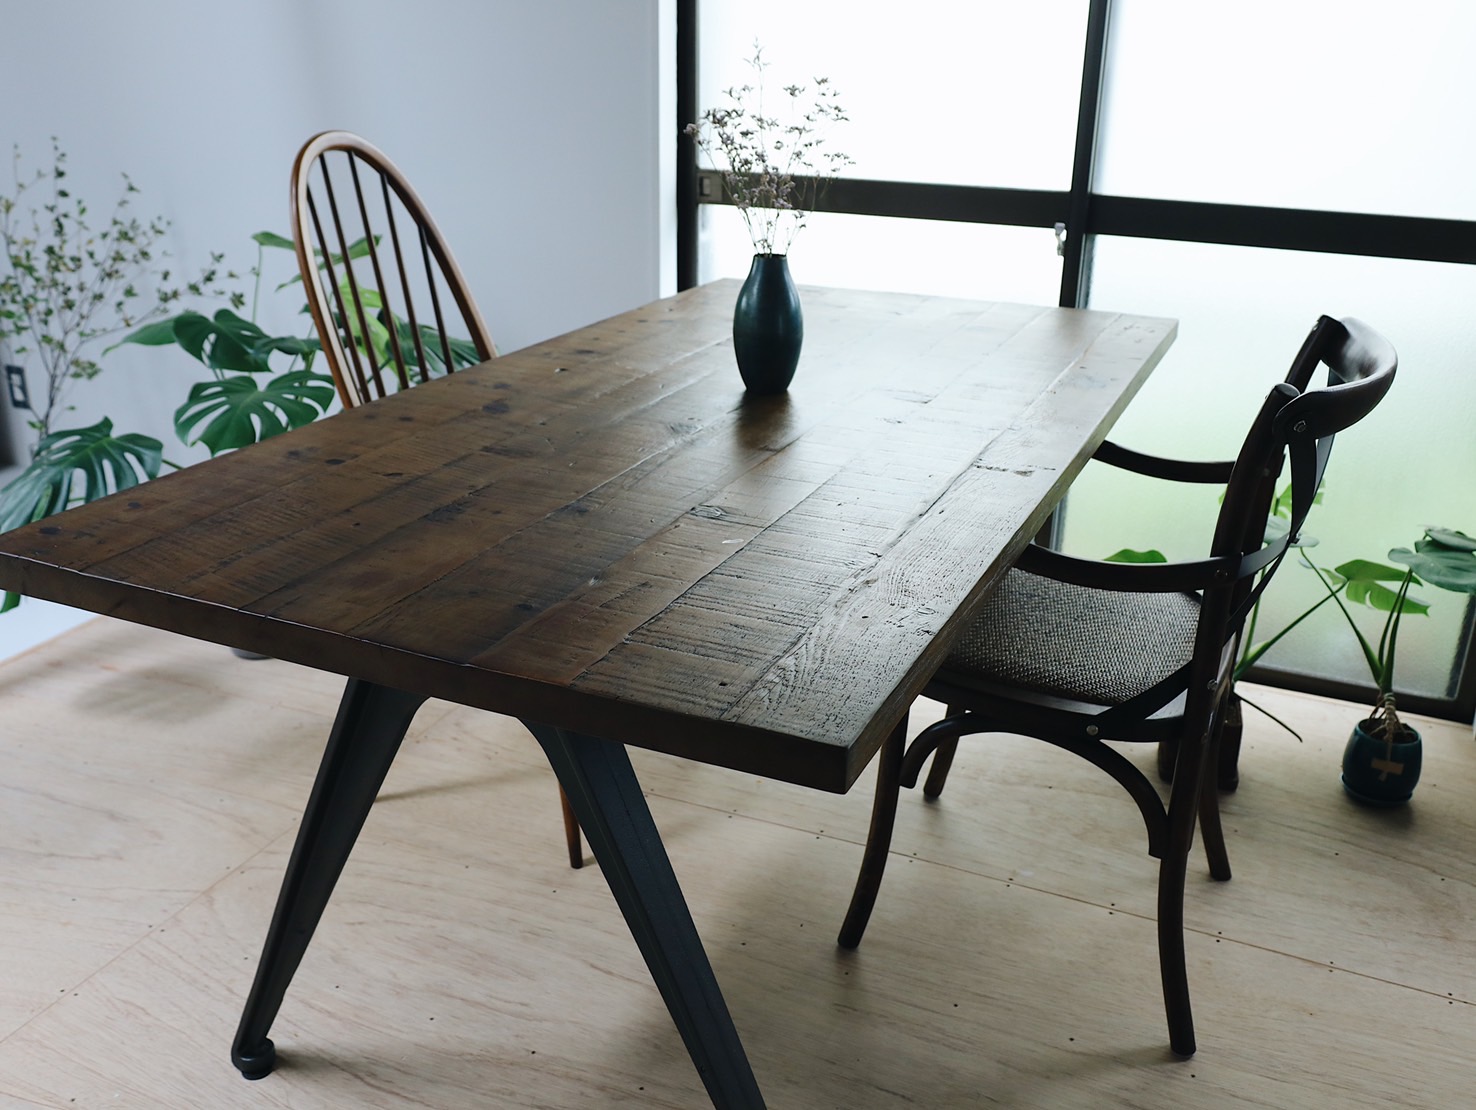 続いてはテーブル。木製の温かみのあるテーブルにこだわると、本格的なおうちカフェの雰囲気に近づけそう。写真のテーブルは古材を活用してつくられたもの。